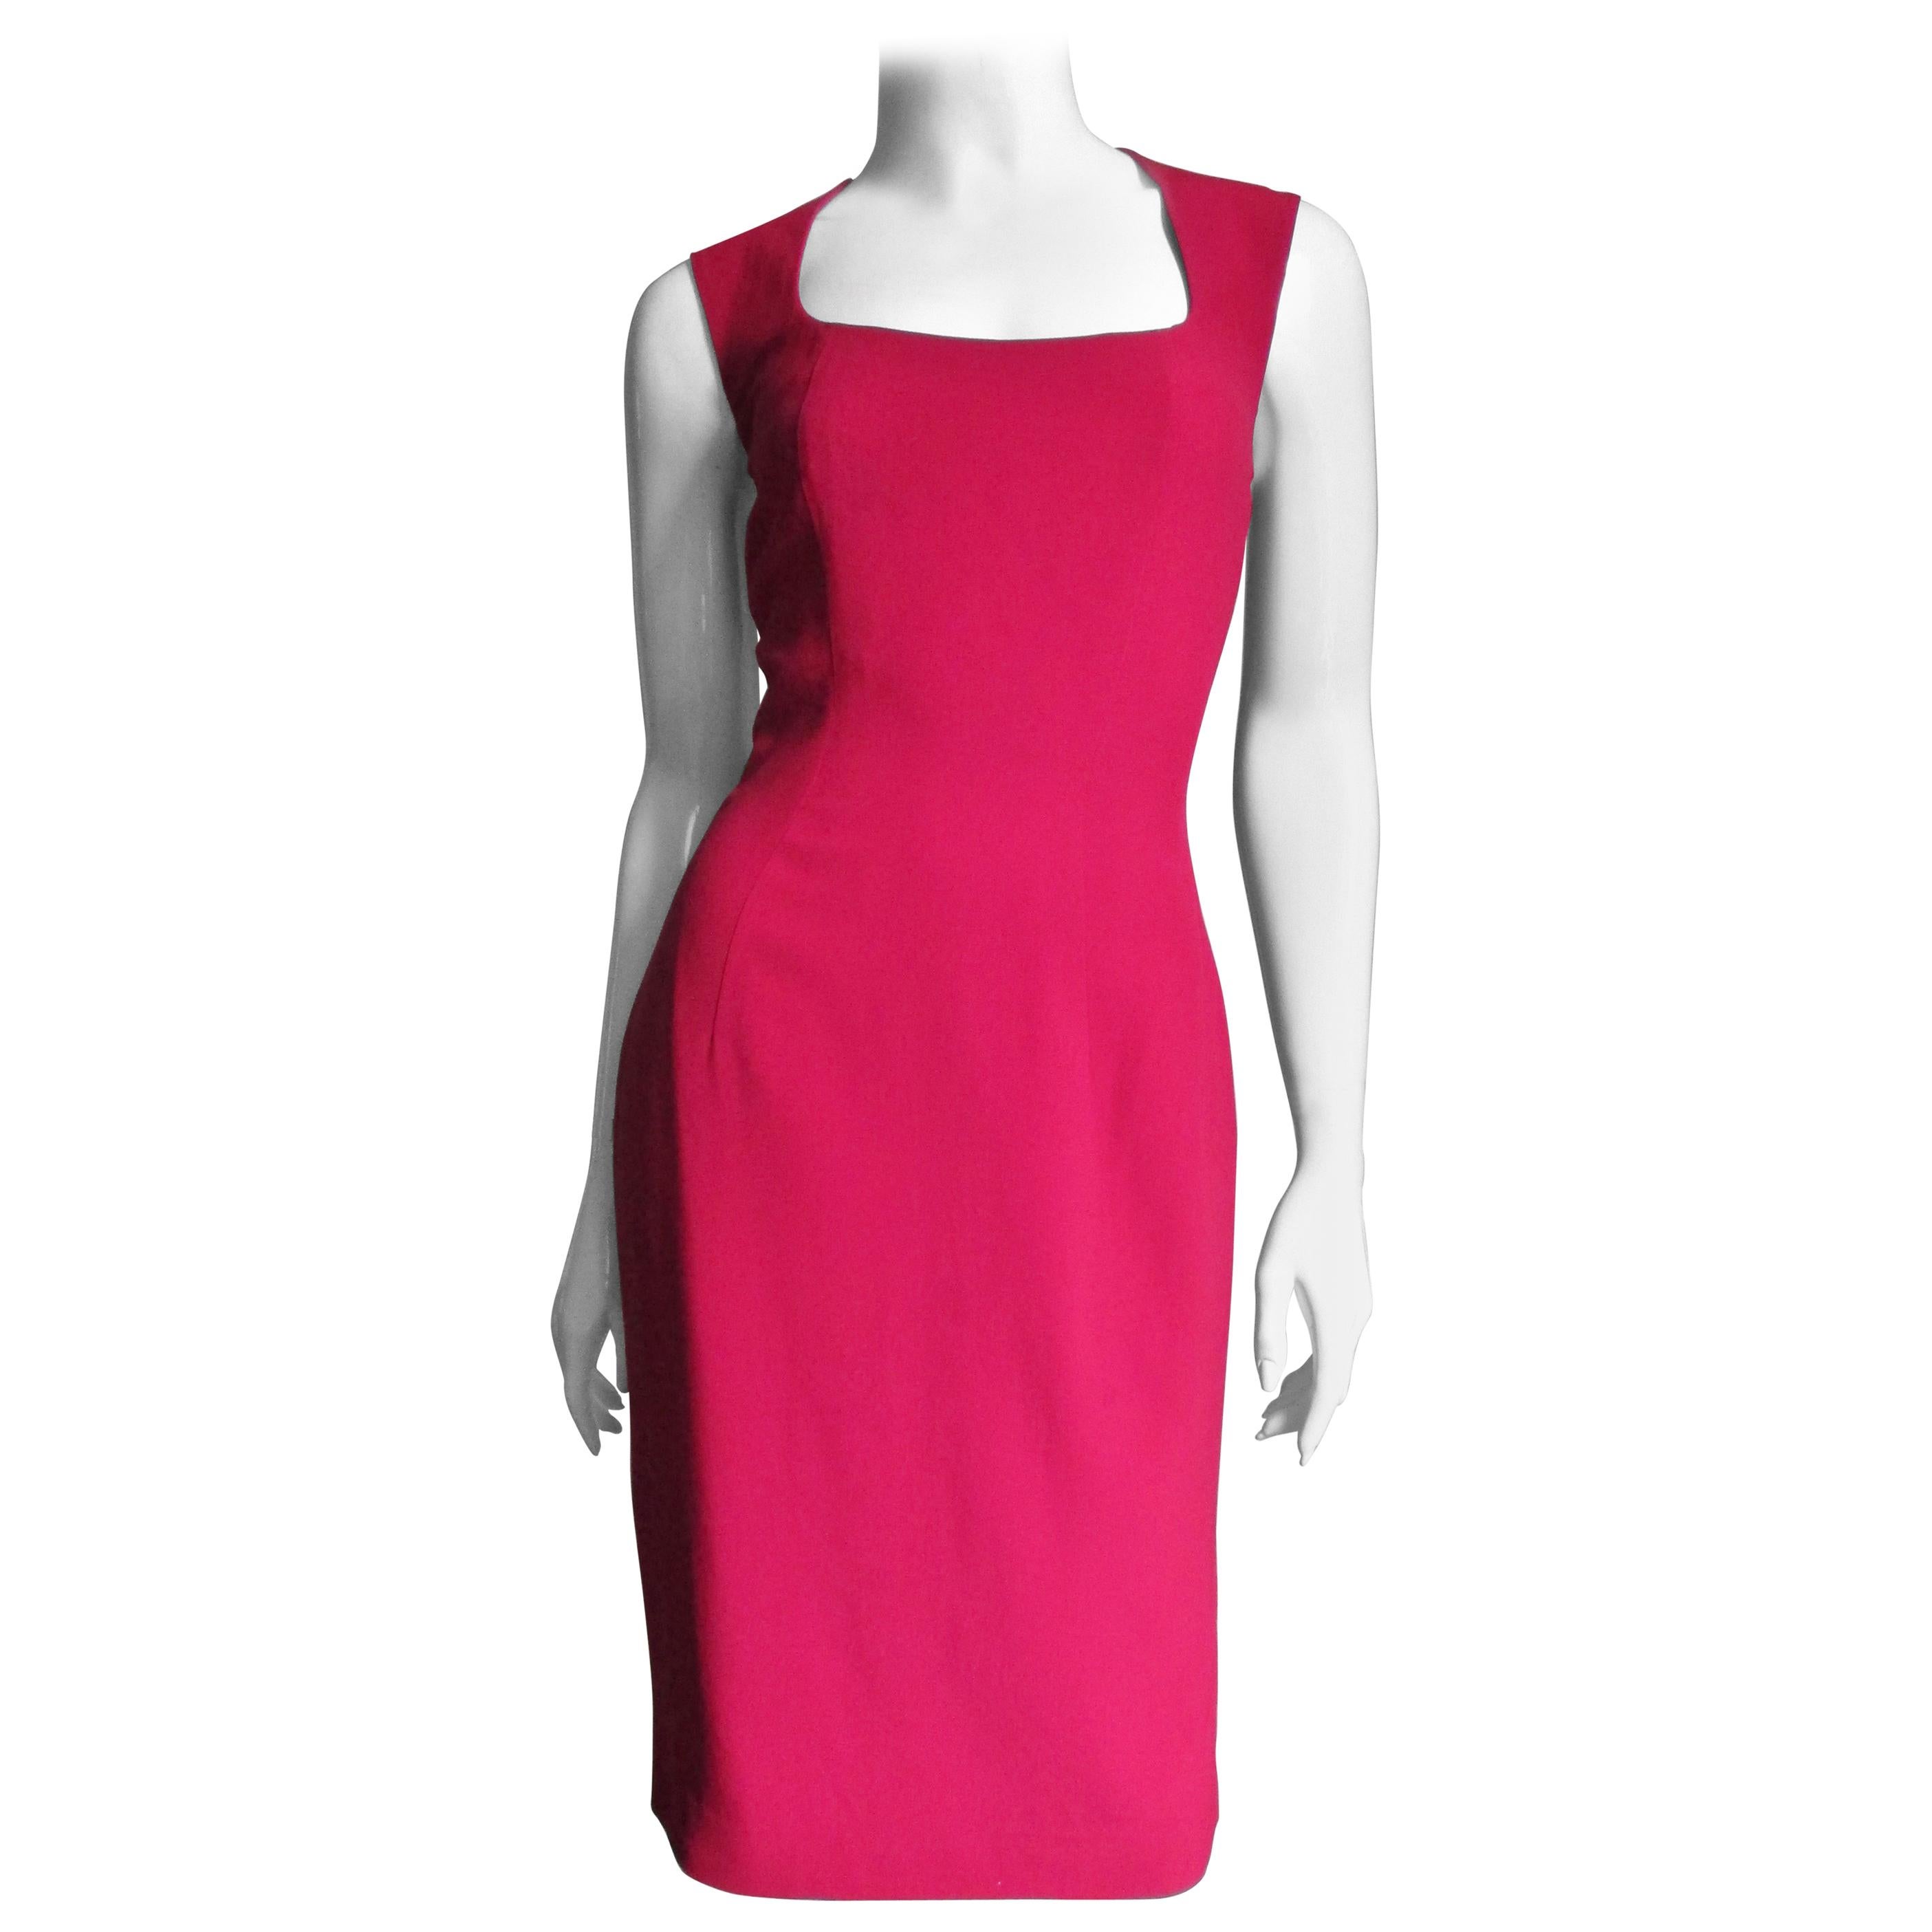 Ein fabelhaftes rotes Kleid der französischen Designerin Sophie Sitbon.   Es ist ärmellos, hat einen quadratischen Ausschnitt und ist halb tailliert mit Prinzessnähten.  Die Rückseite ist wunderschön mit Ausschnitten, die einen Kreis am oberen